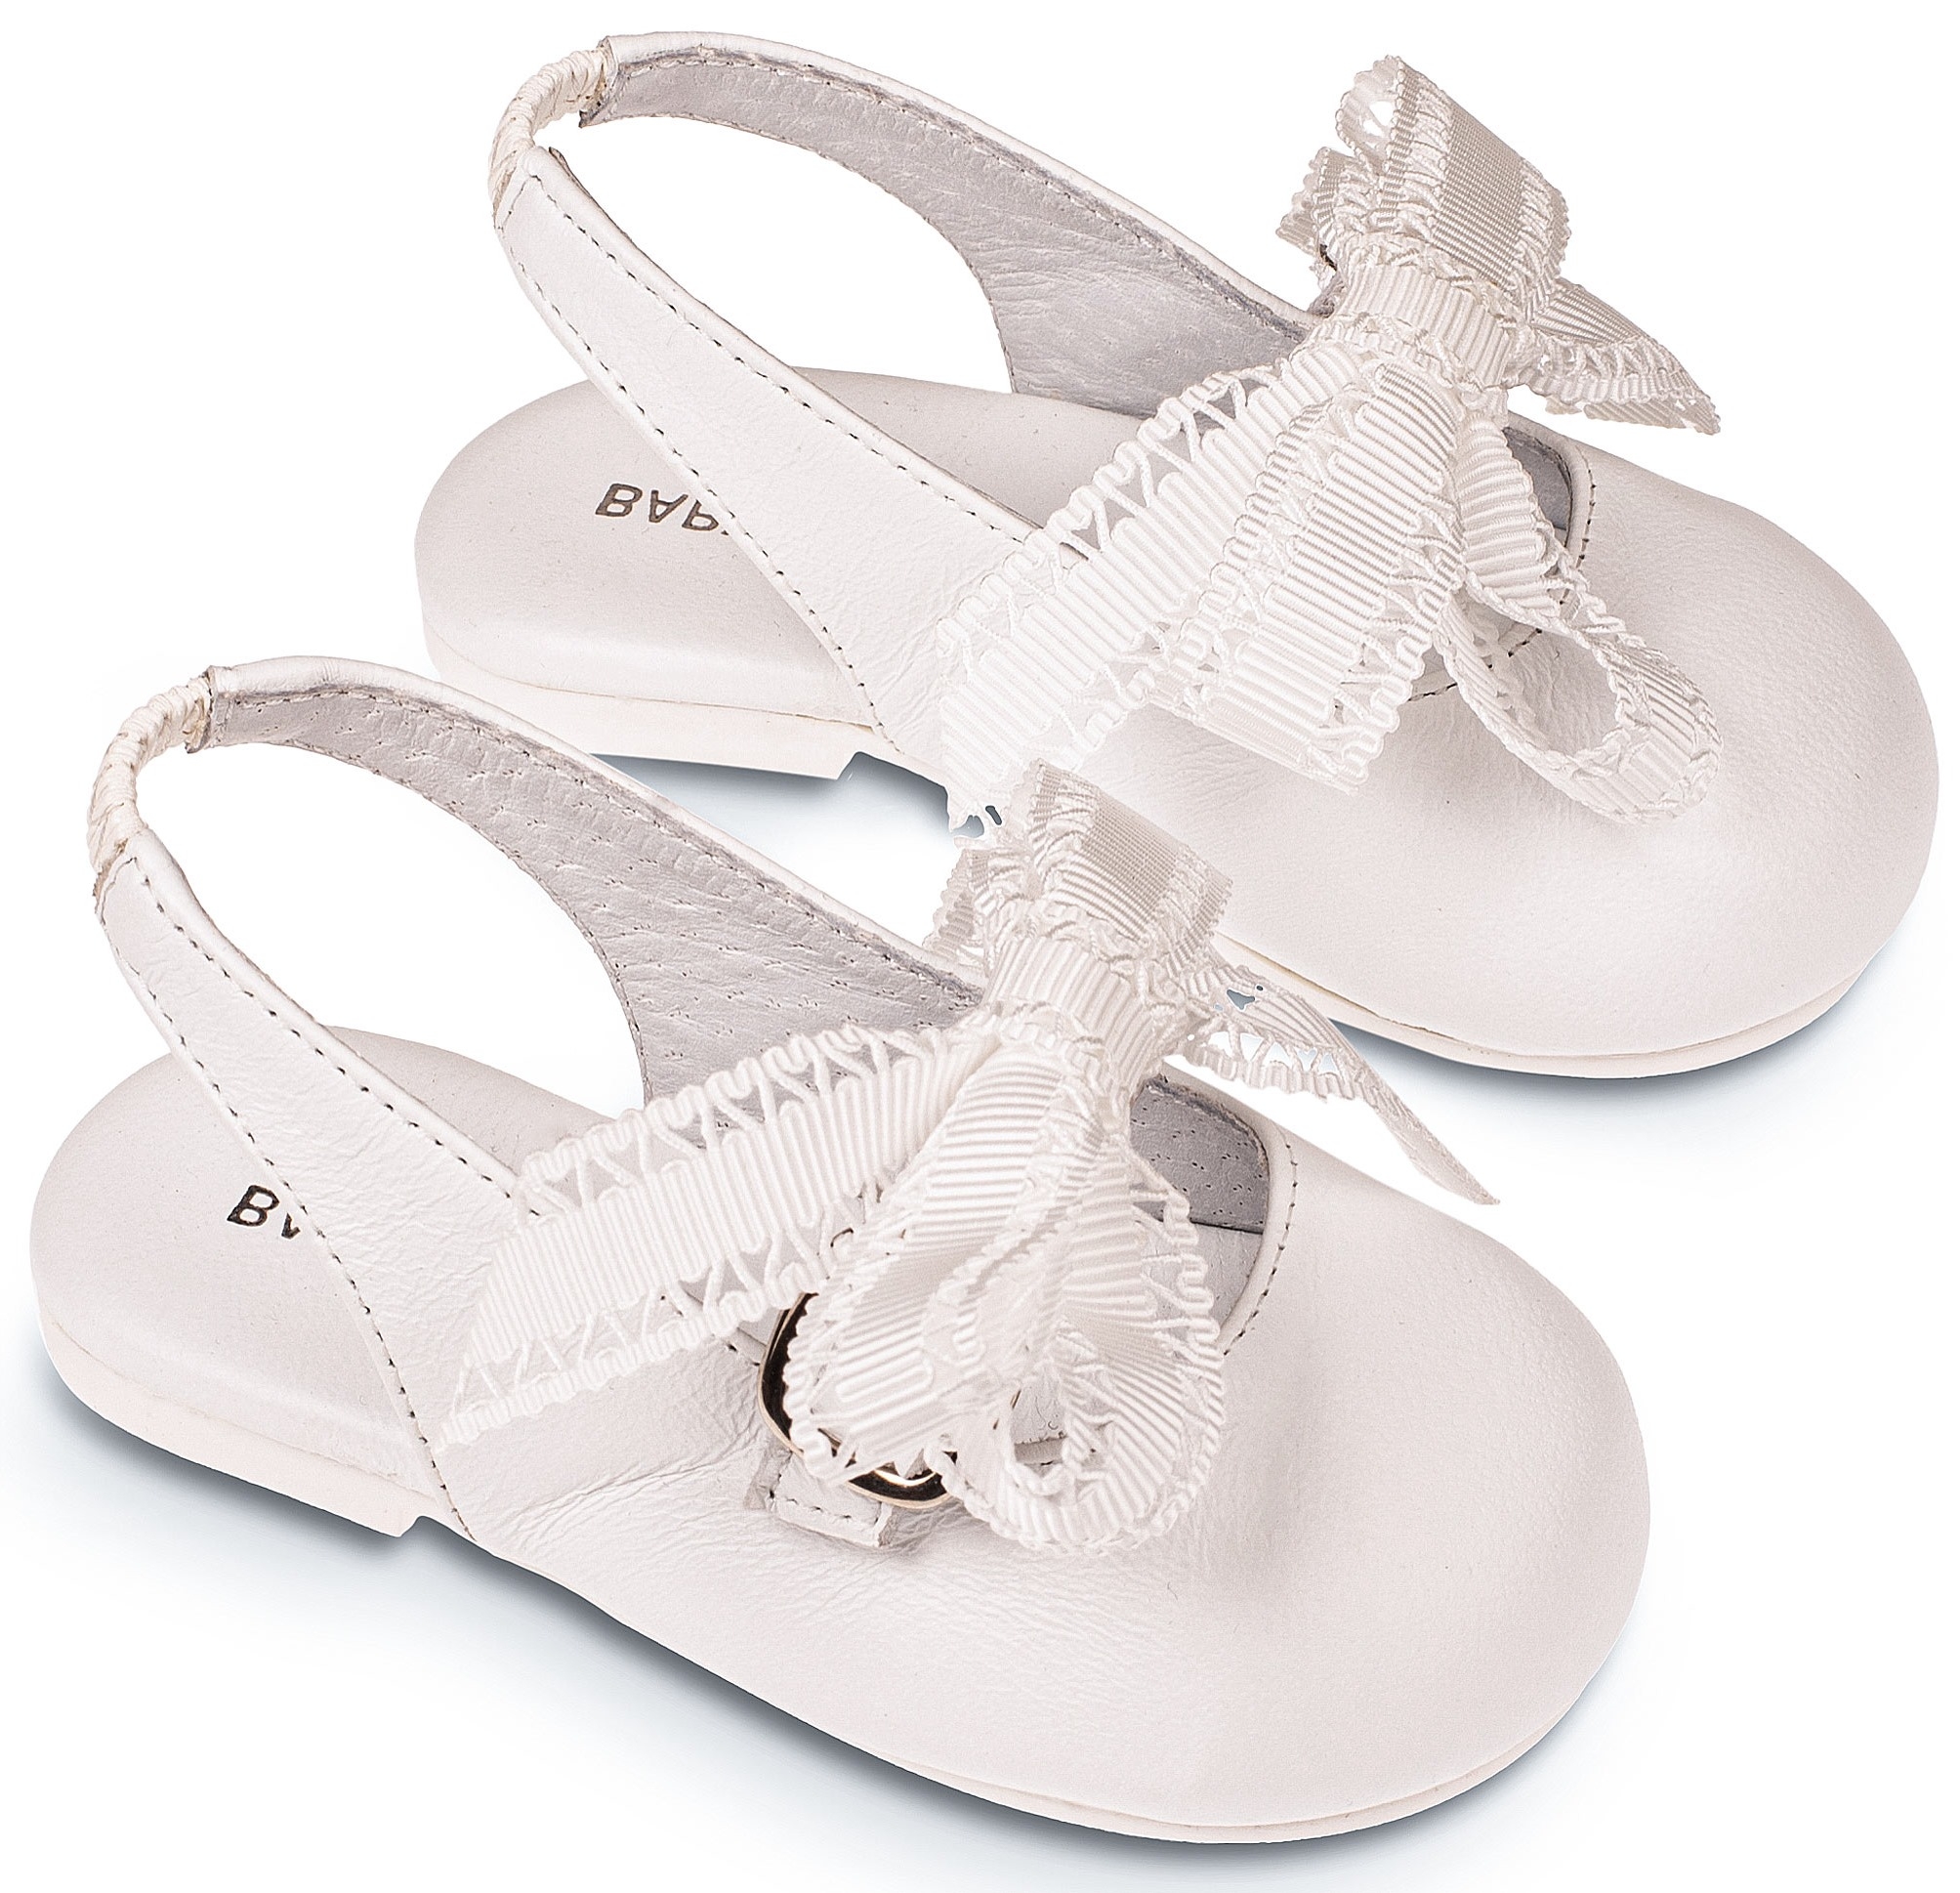 Παπούτσι Σαμπό Gros - Βαπτιστικά παπούτσια για κορίτσι